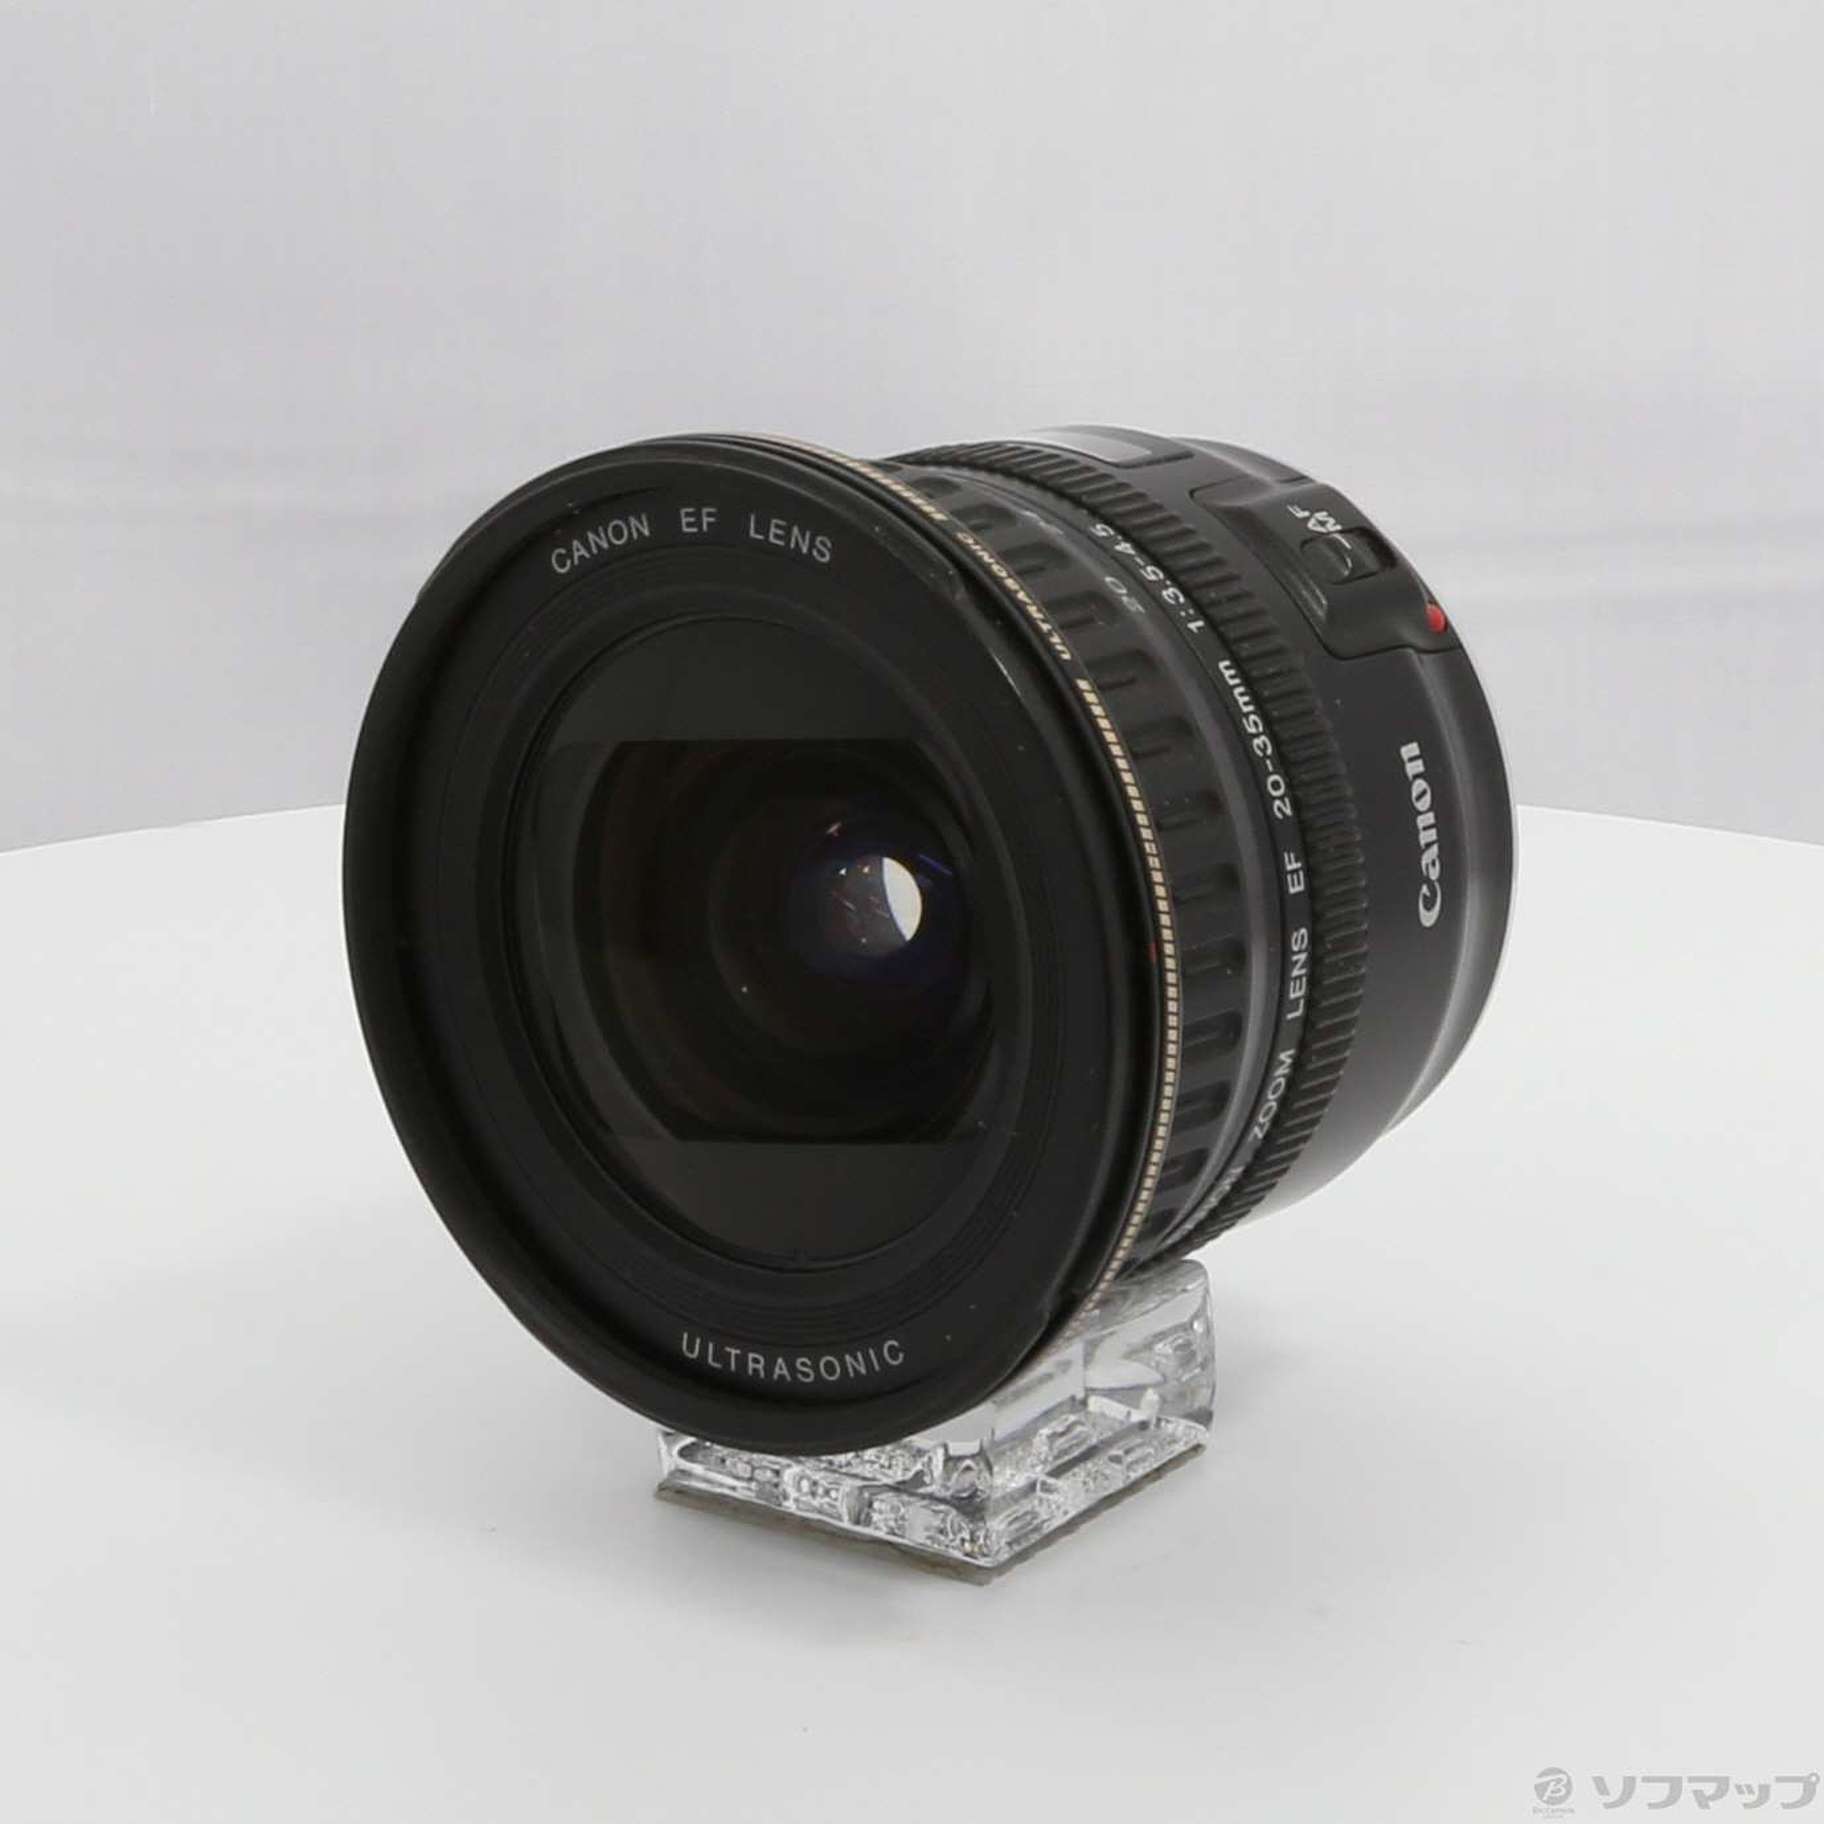 中古】セール対象品 Canon EF 20-35mm F3.5-4.5 USM (レンズ) ◇02/04